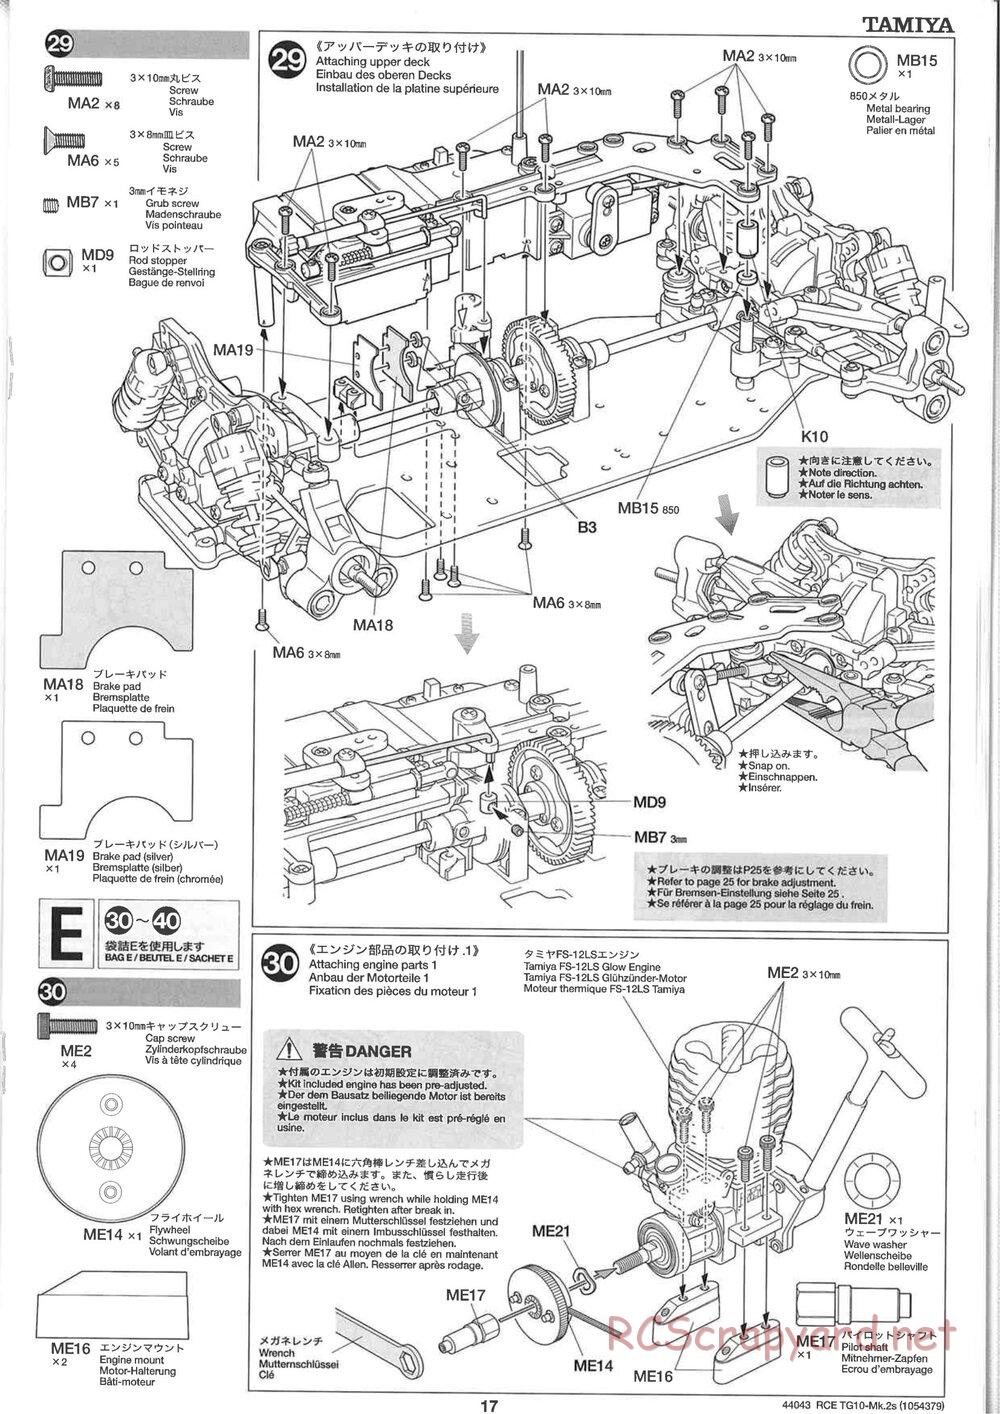 Tamiya - TG10 Mk.2s Chassis - Manual - Page 18